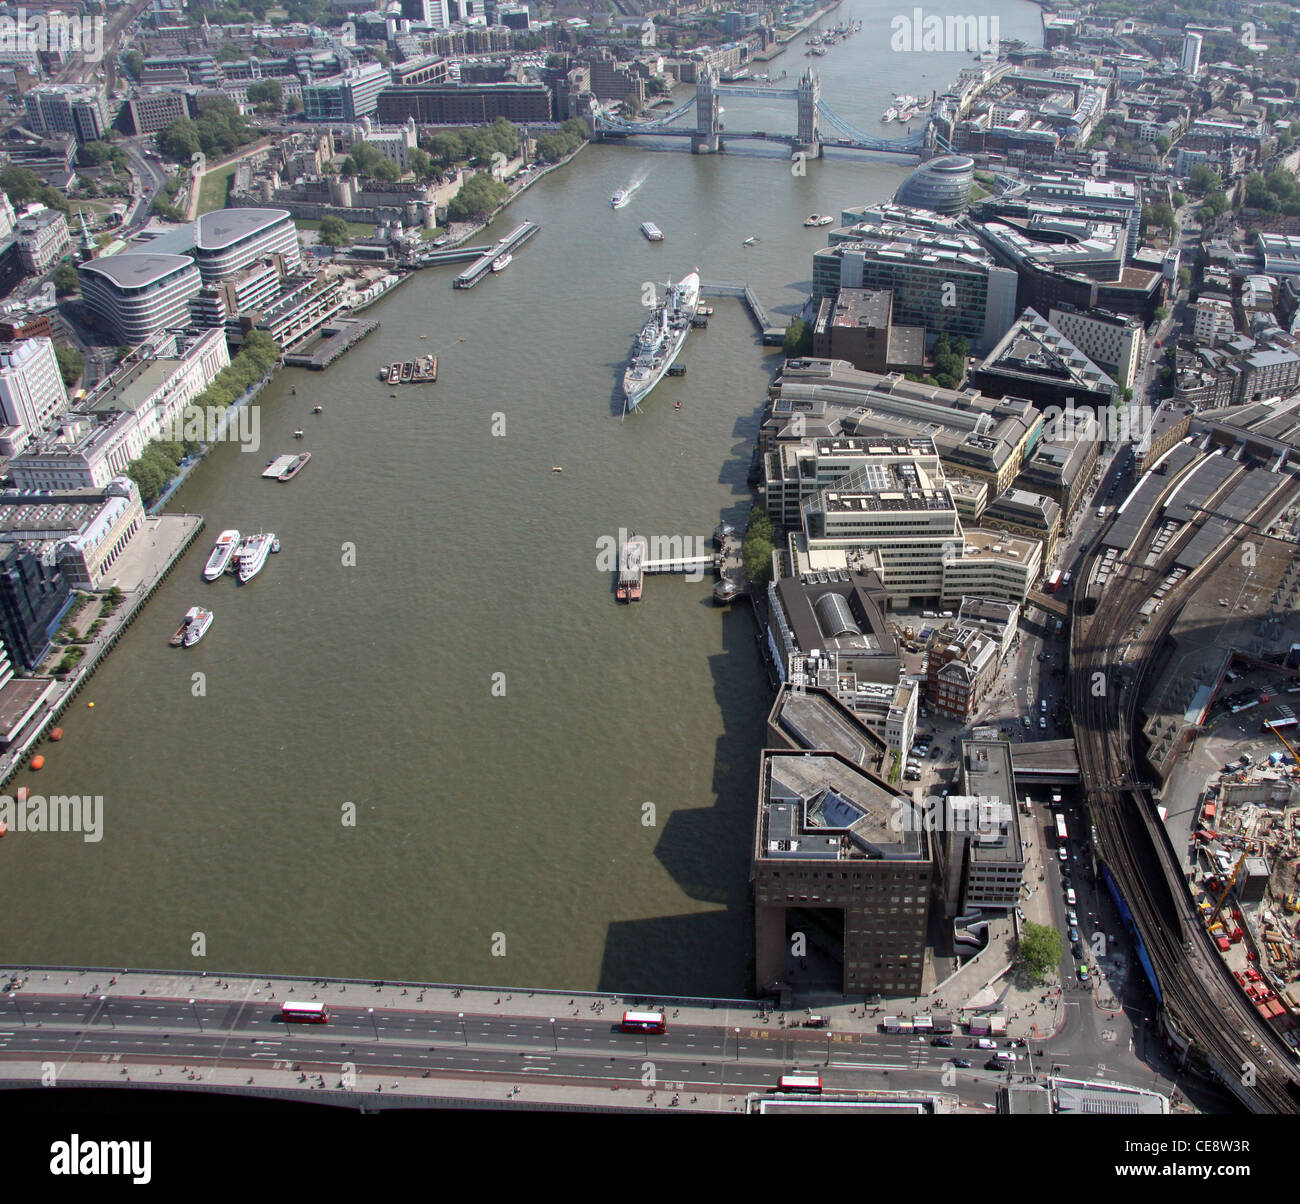 Immagine aerea del Tamigi a Londra London Bridge, guardando ad est verso la HMS Belfast e il Tower Bridge, Southwark, Londra SE1 Foto Stock